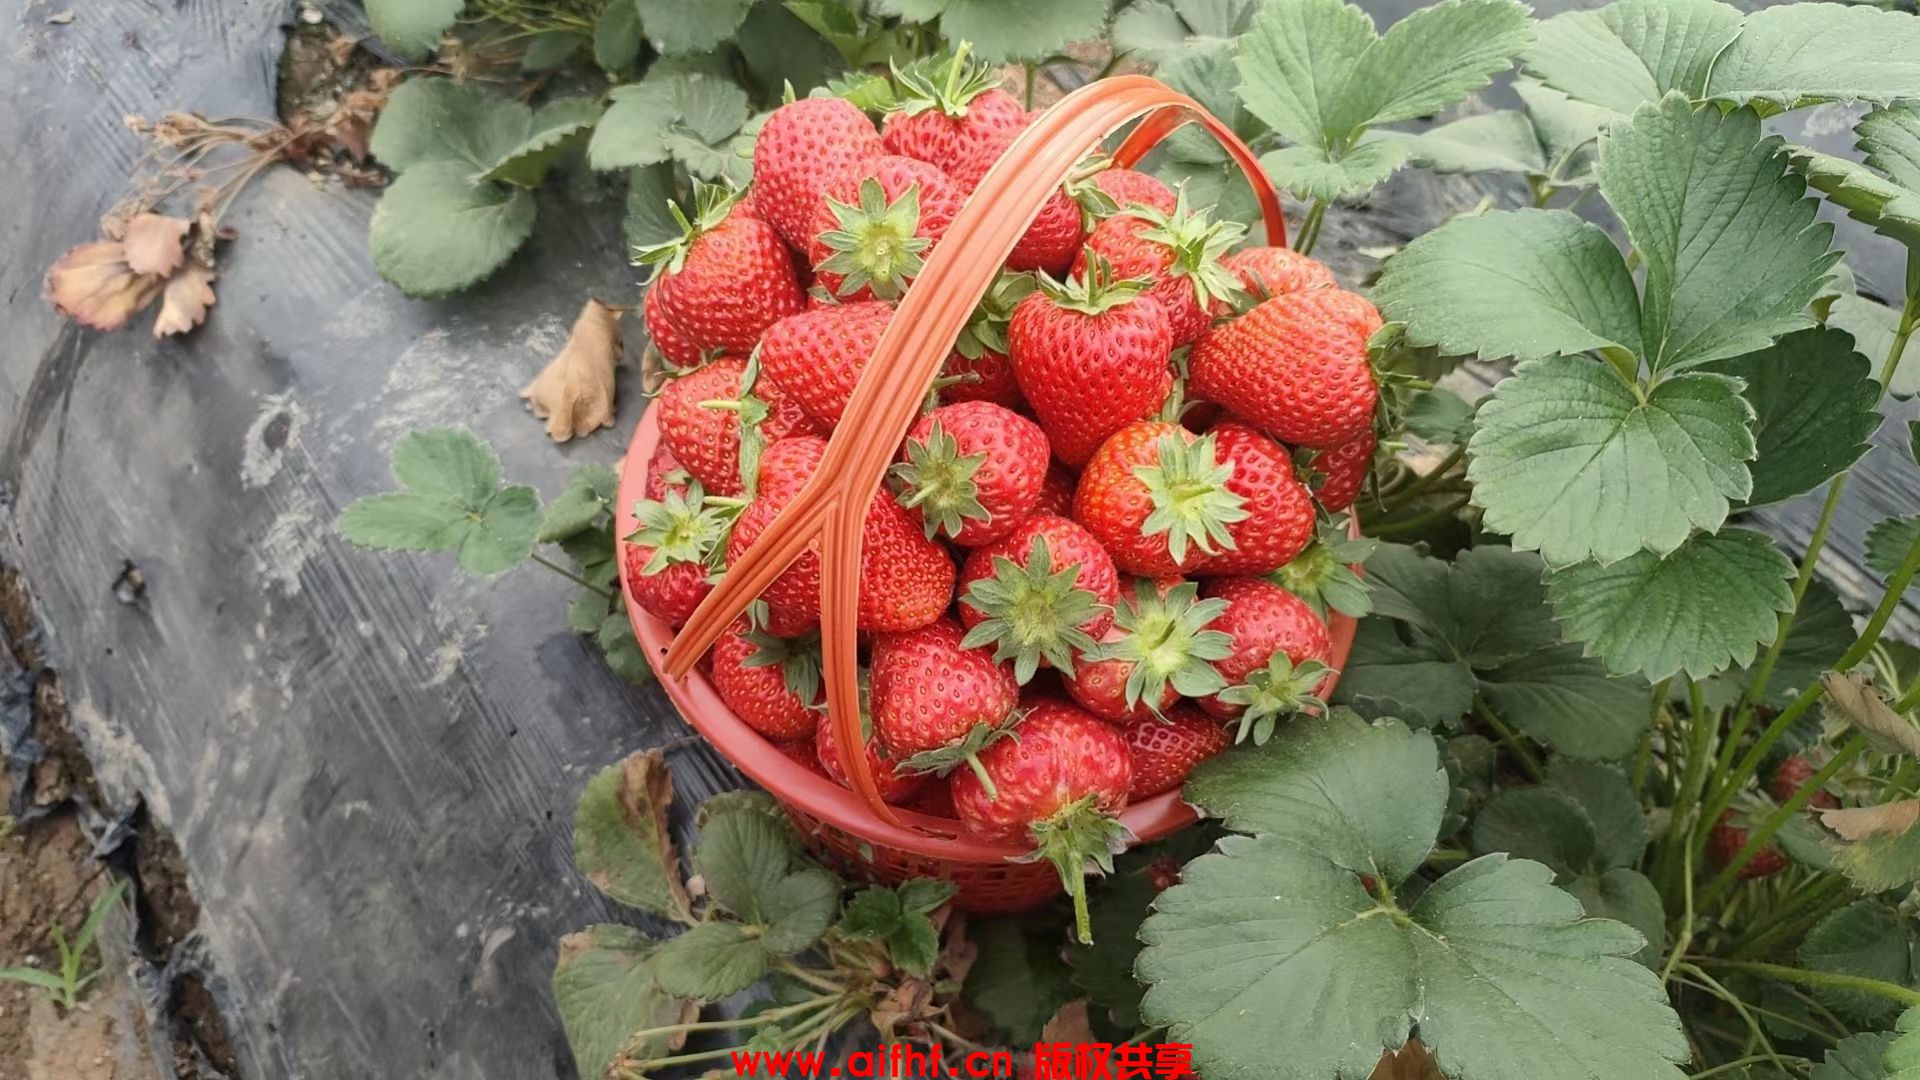 满满一篮子草莓